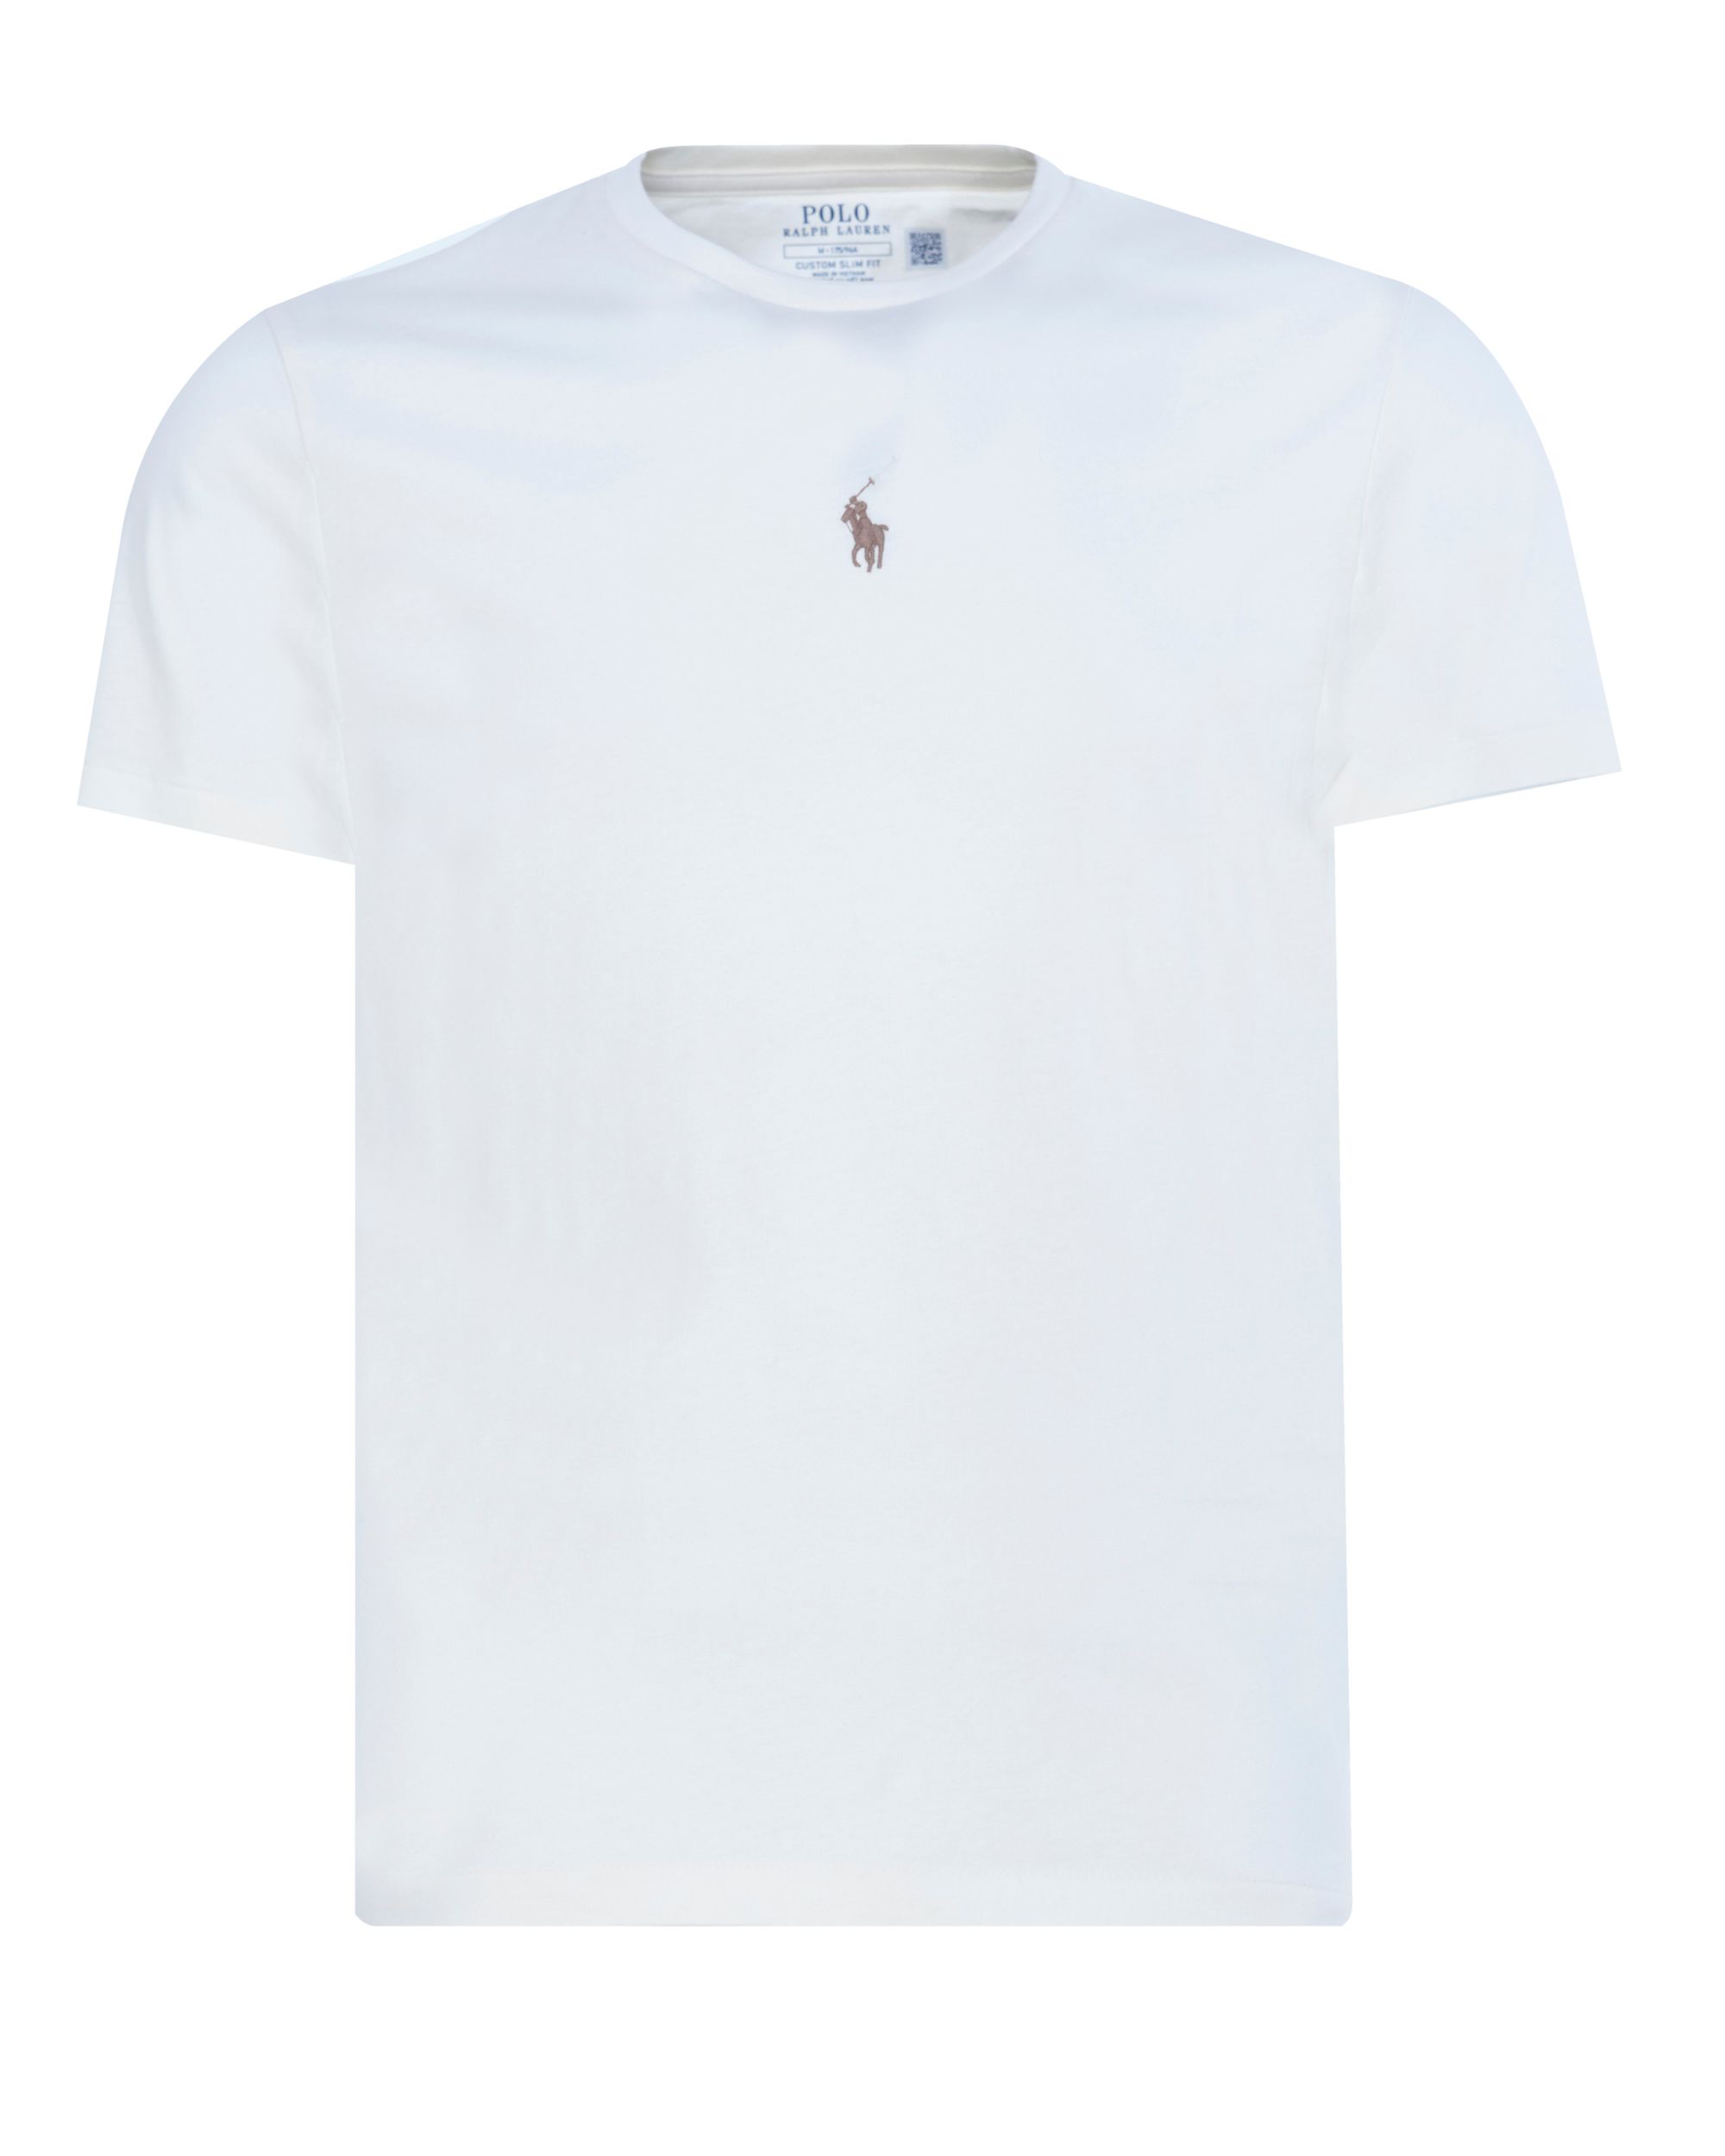 Polo Ralph Lauren T-shirt KM Ecru 080597-001-L